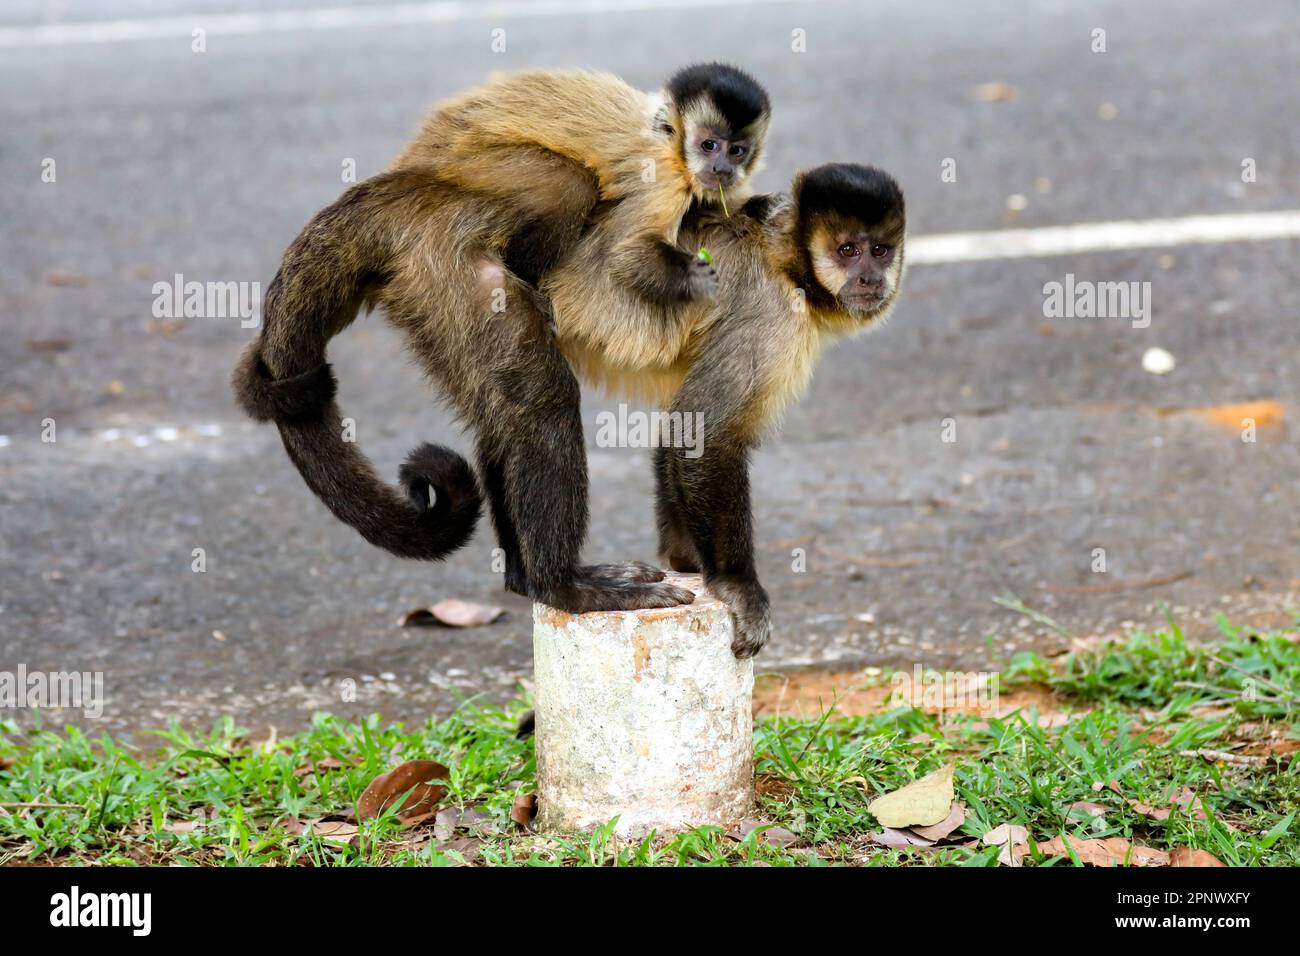 Singe Capuchin (sapajus), singe brésilien typique Banque D'Images